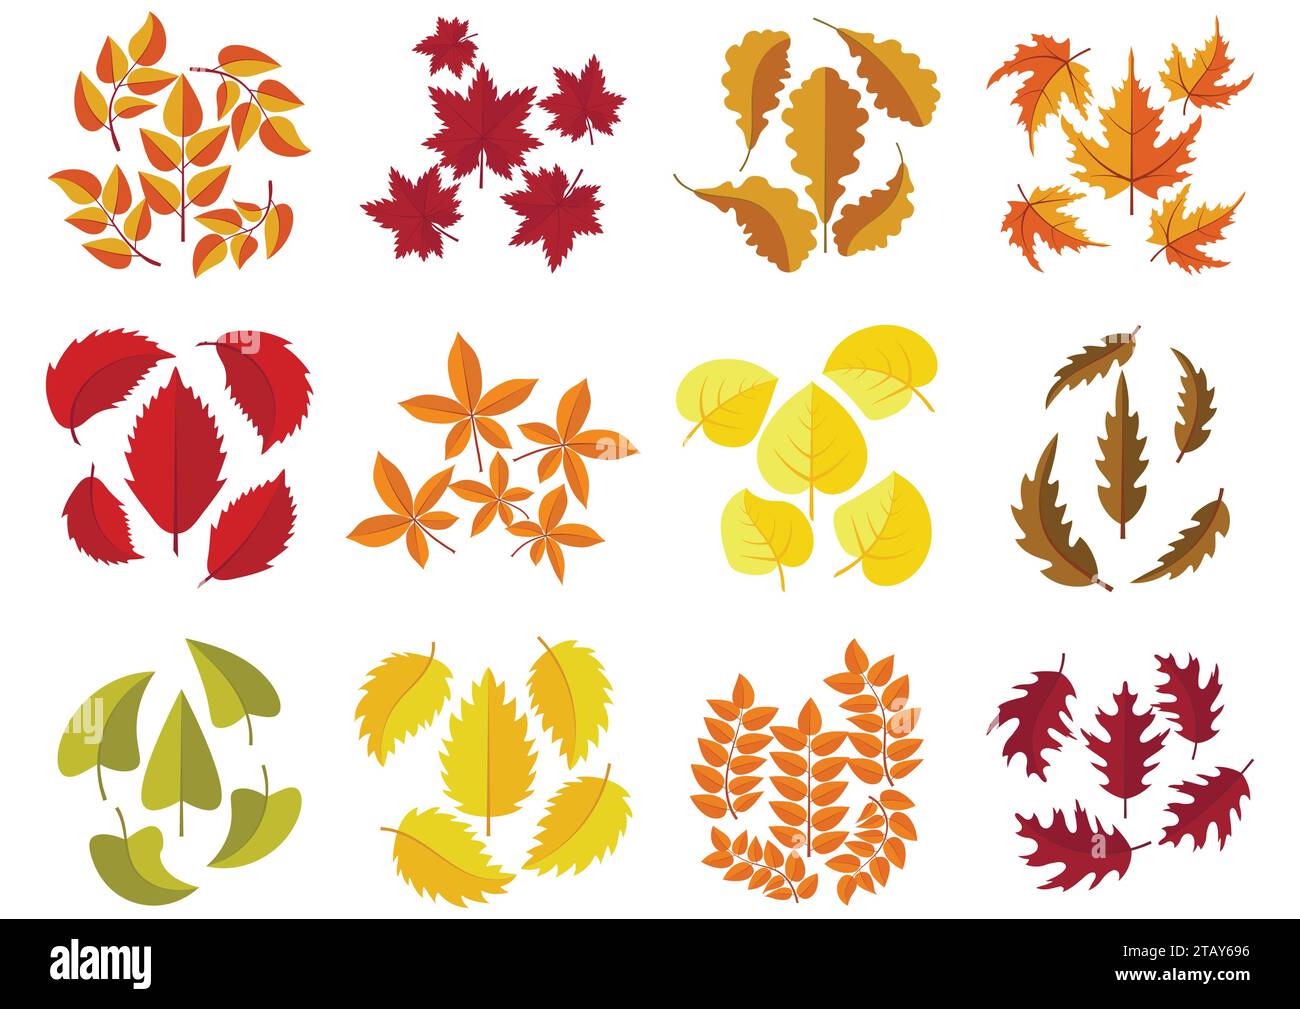 Ensemble de feuilles d'automne colorées isolées sur fond blanc. Collection de feuilles d'automne tombées vertes, rouges et oranges dans un style plat. Illustration vectorielle Illustration de Vecteur